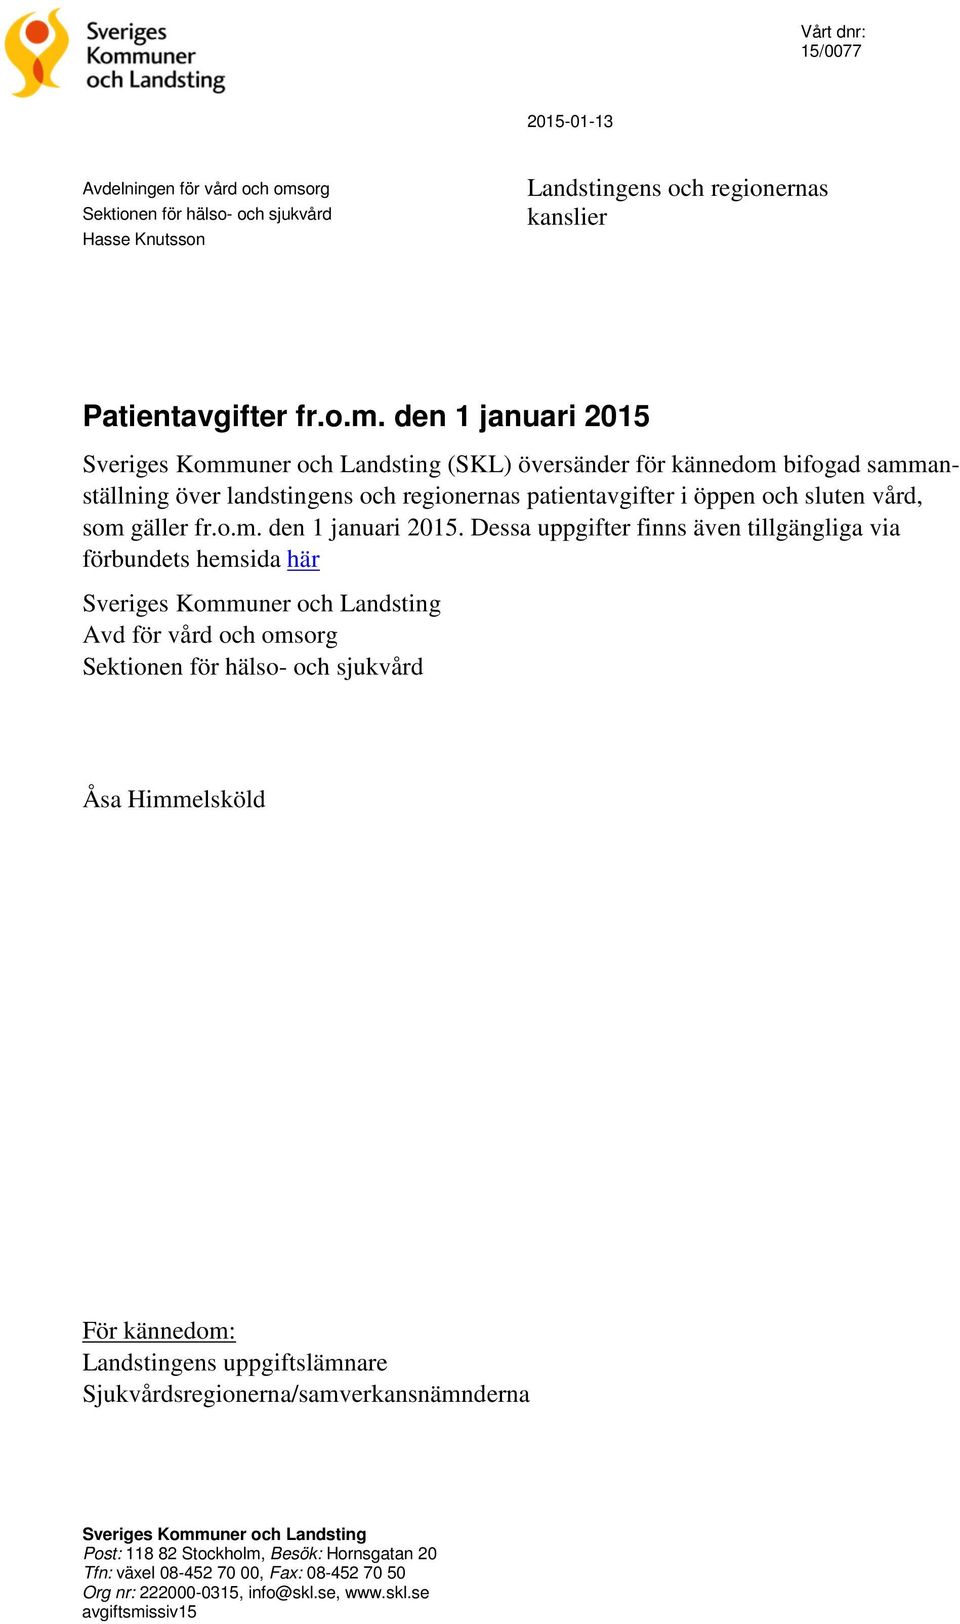 den 1 januari 2015 Sveriges Kommuner och Landsting (SKL) översänder för kännedom bifogad sammanställning över landstingens och regionernas patientavgifter i öppen och sluten vård, som gäller fr.o.m. den 1 januari 2015.